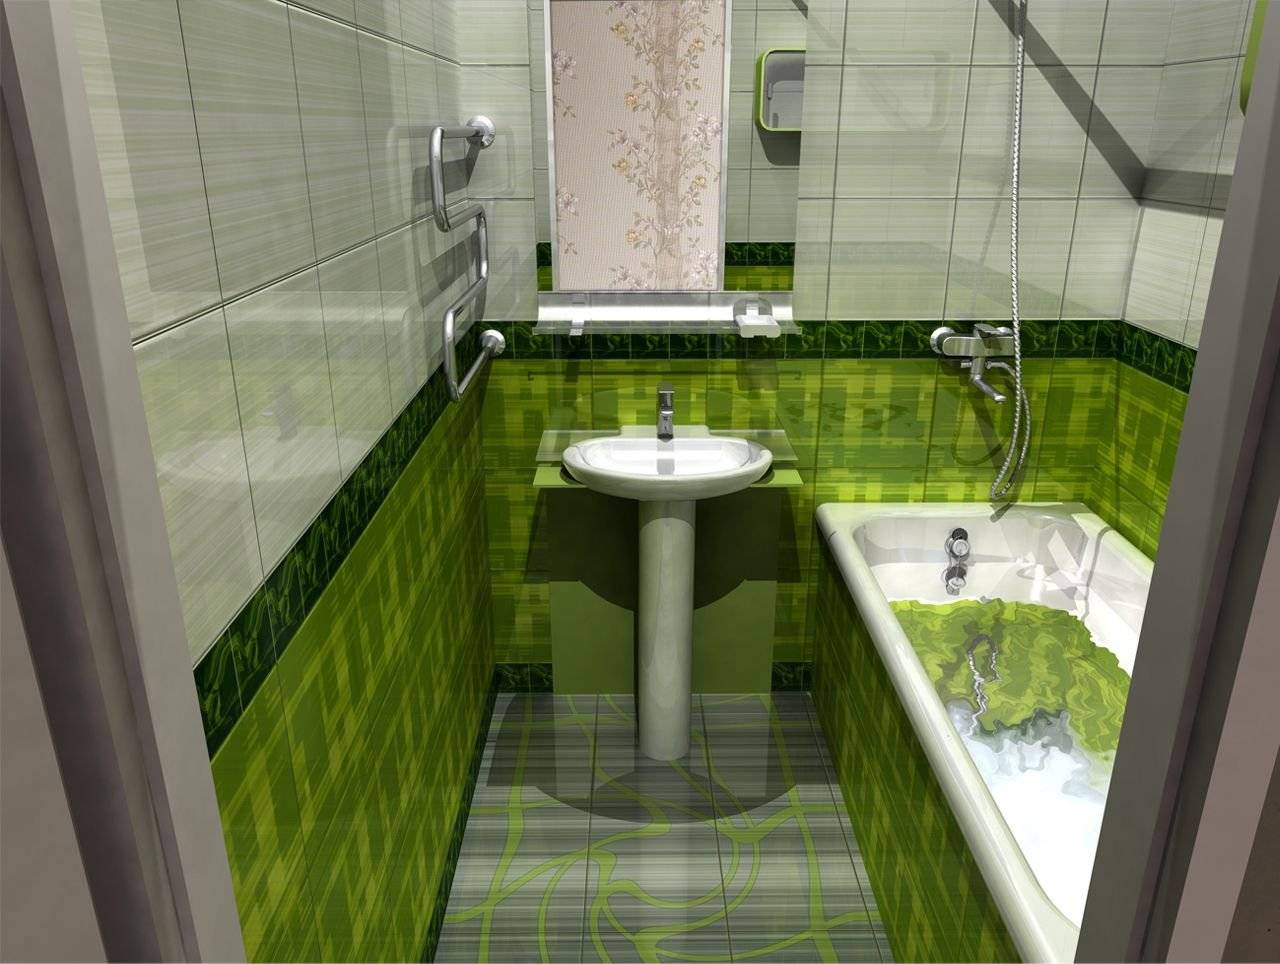 Малогабаритная ванная комната: интерьерные перипетии